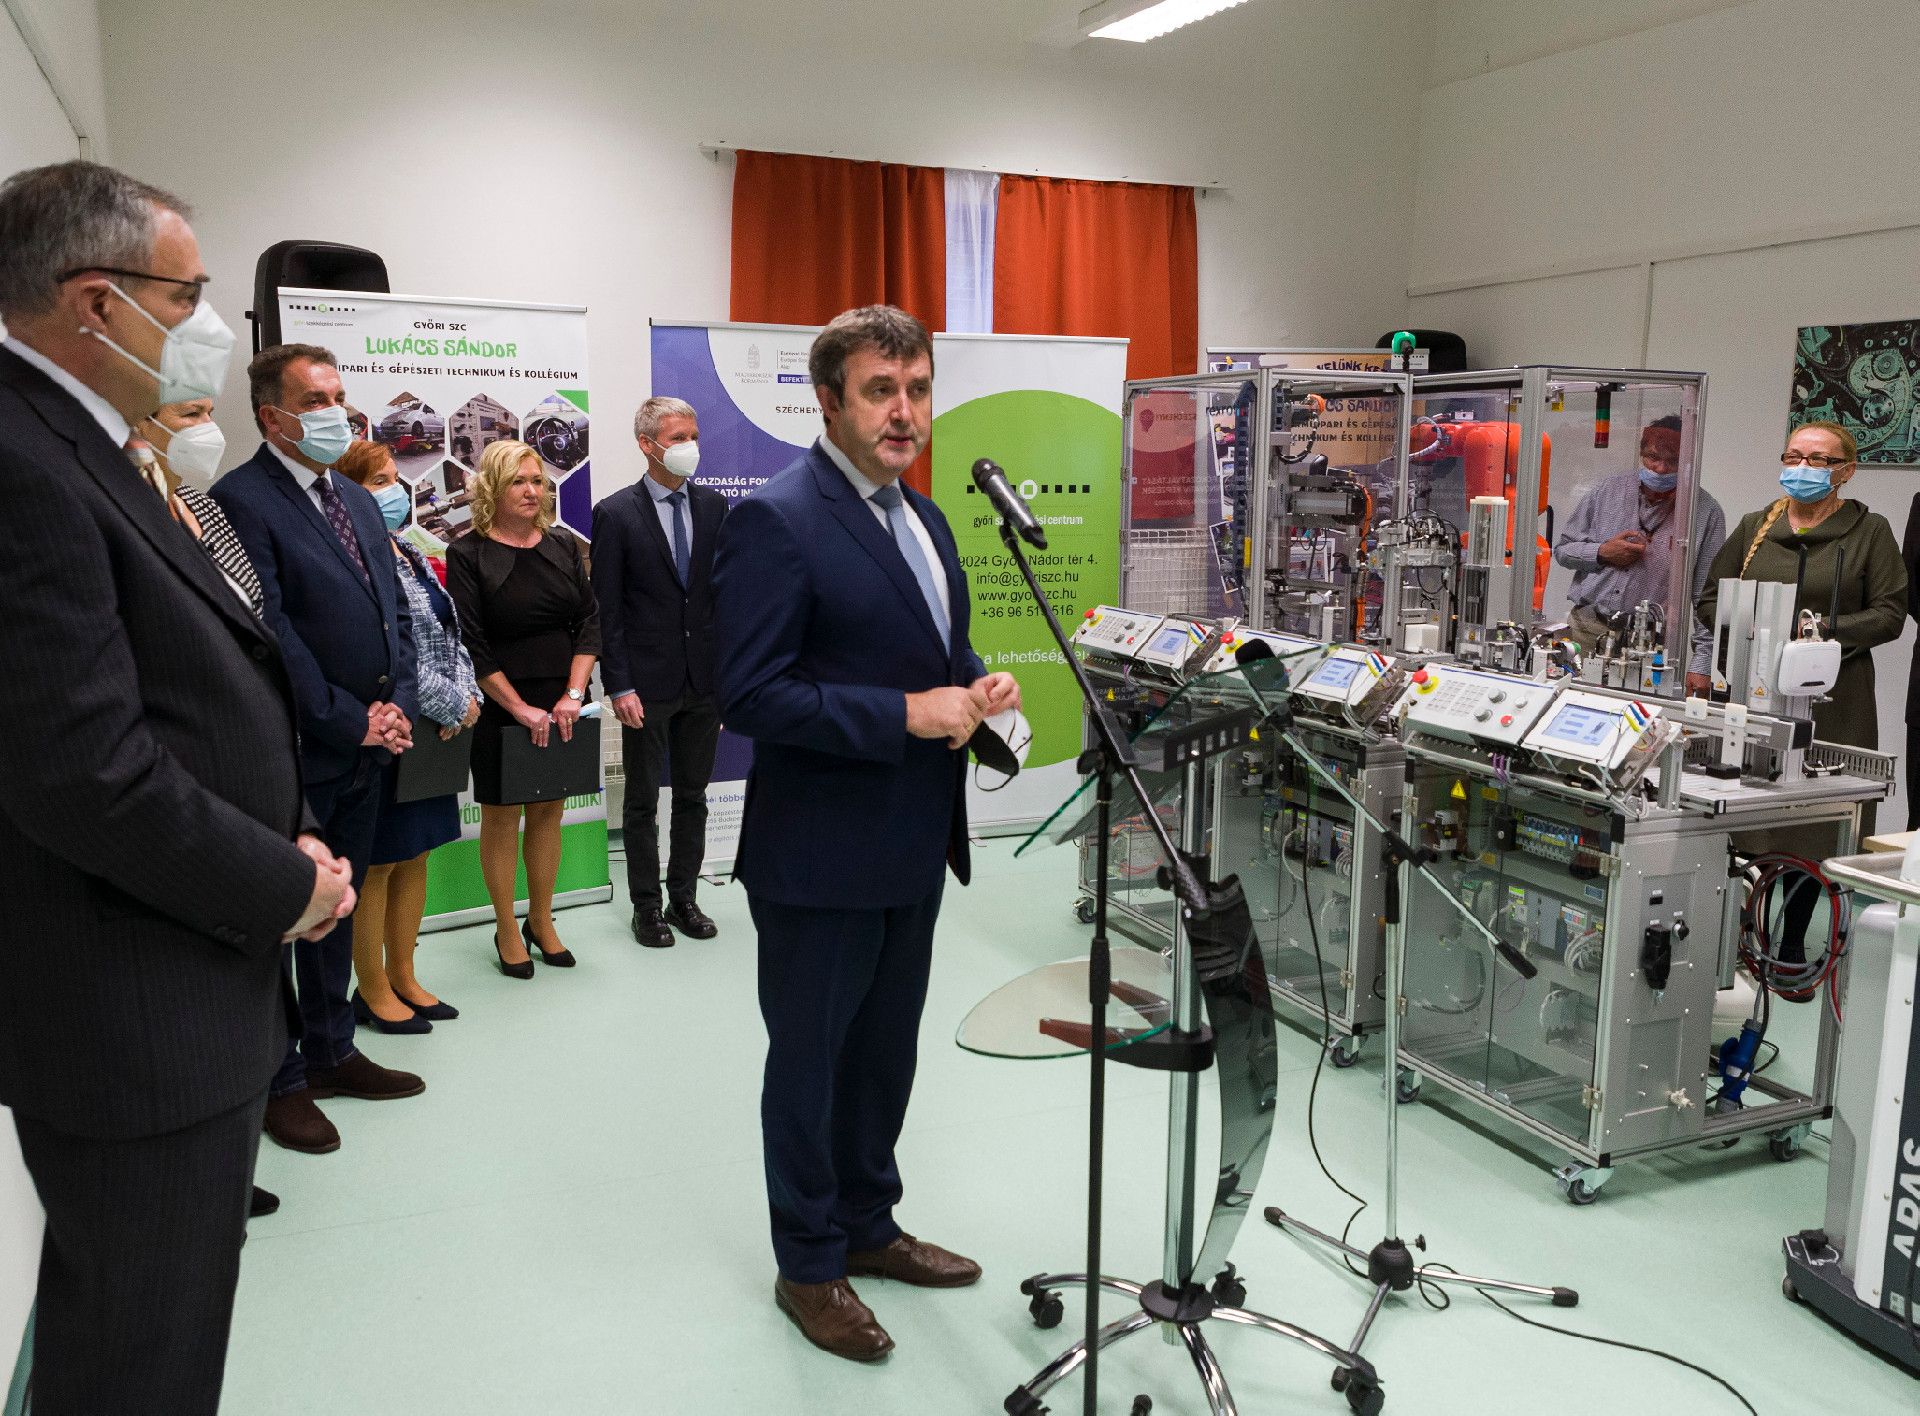 Új gyártásszimulációs berendezéssel bővült a Győri Szakképzési Centrum című hír borítóképe